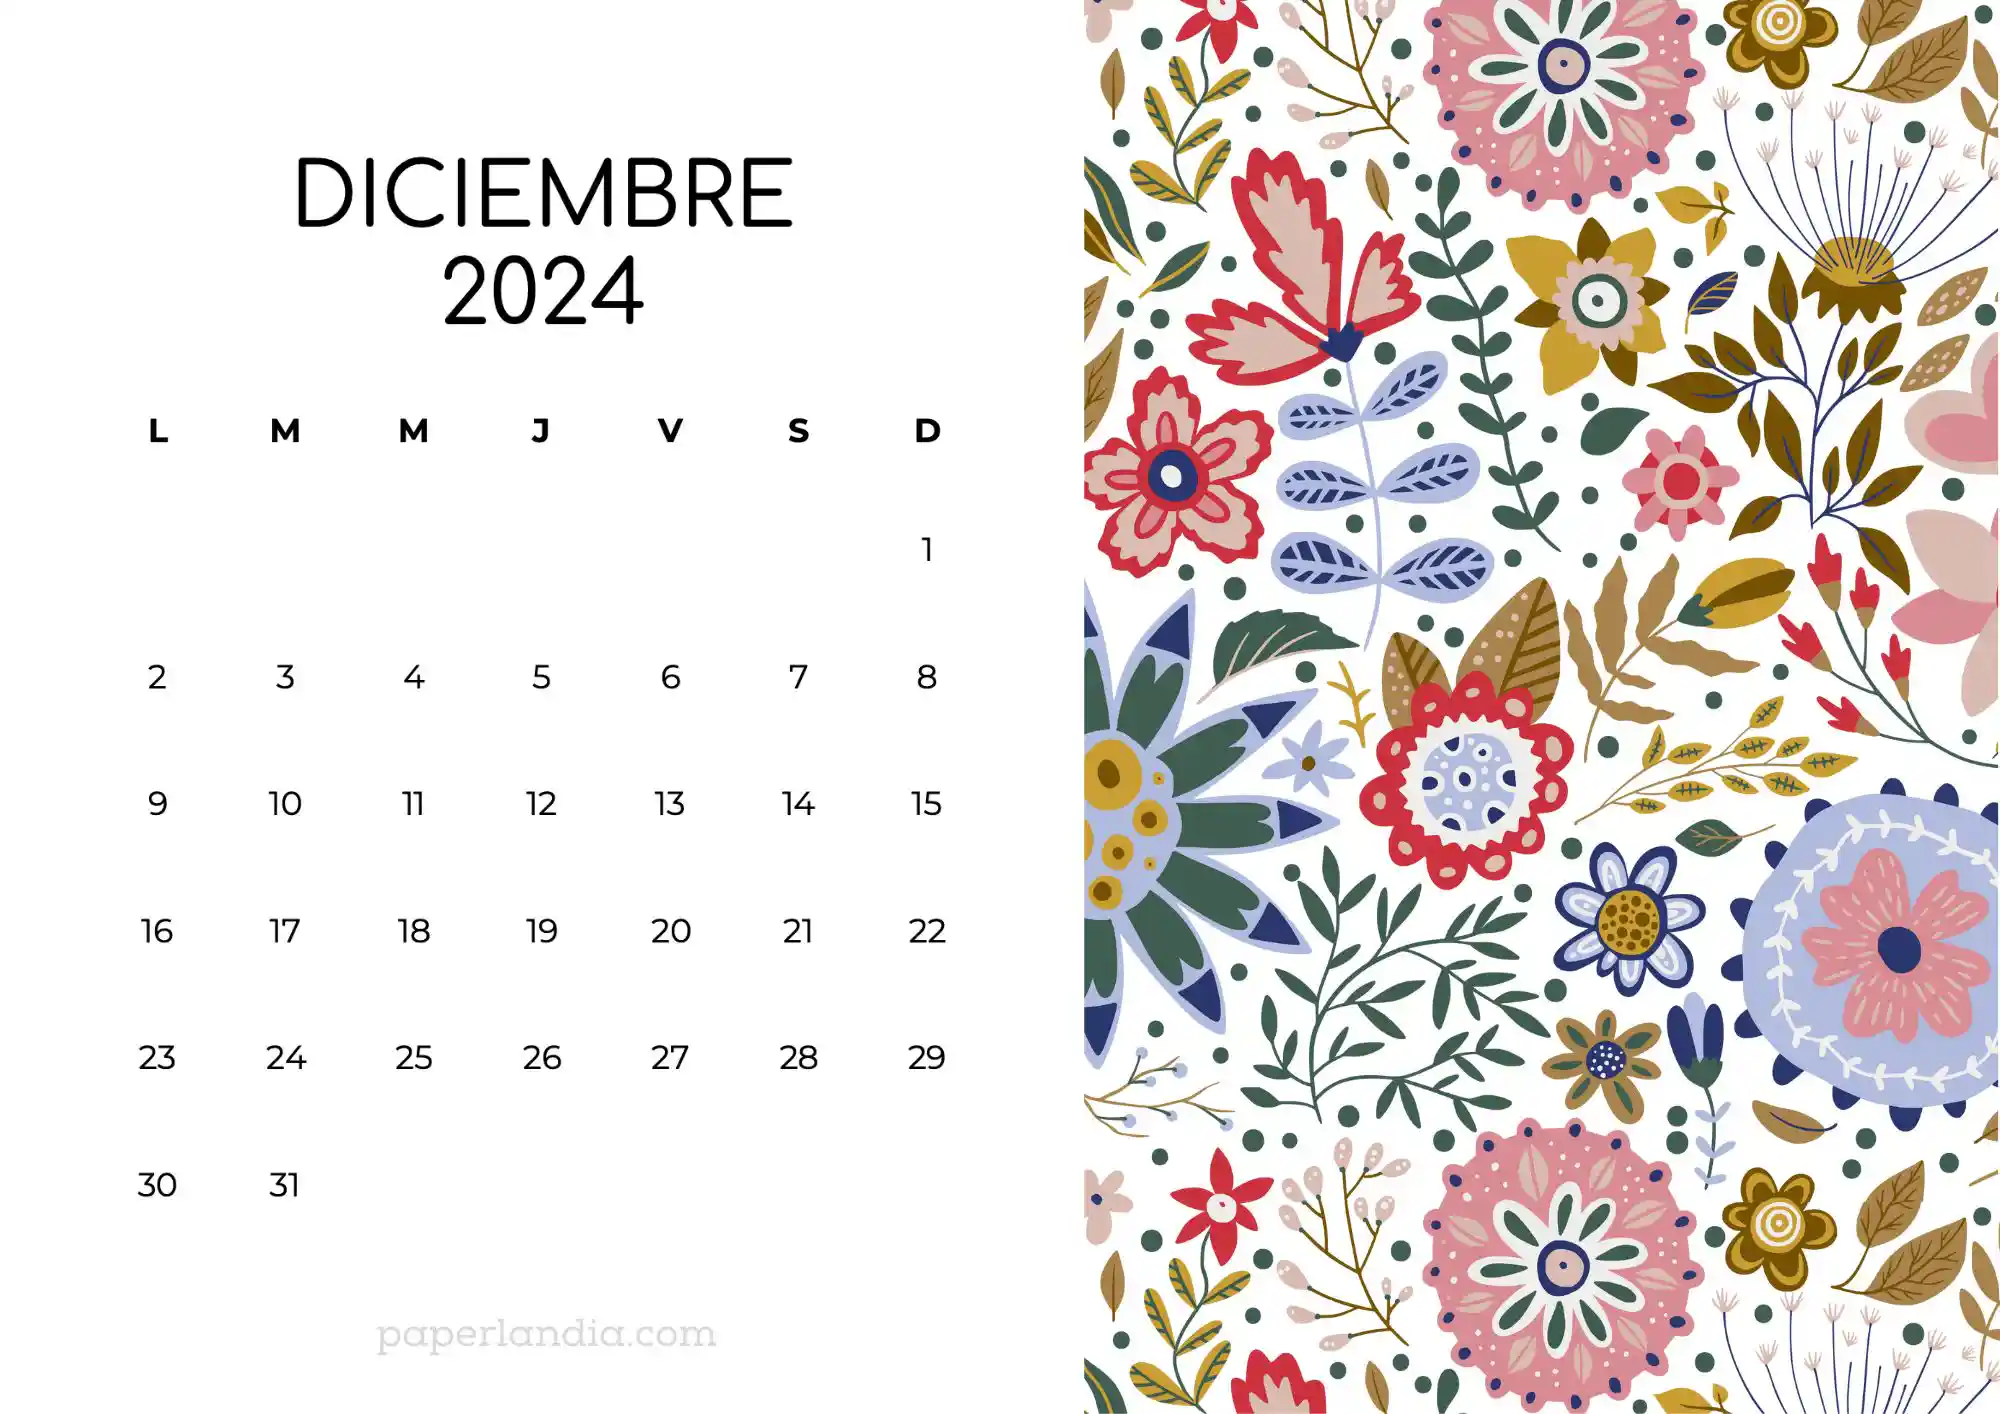 Calendario diciembre 2024 horizontal con flores escandinavas fondo blanco